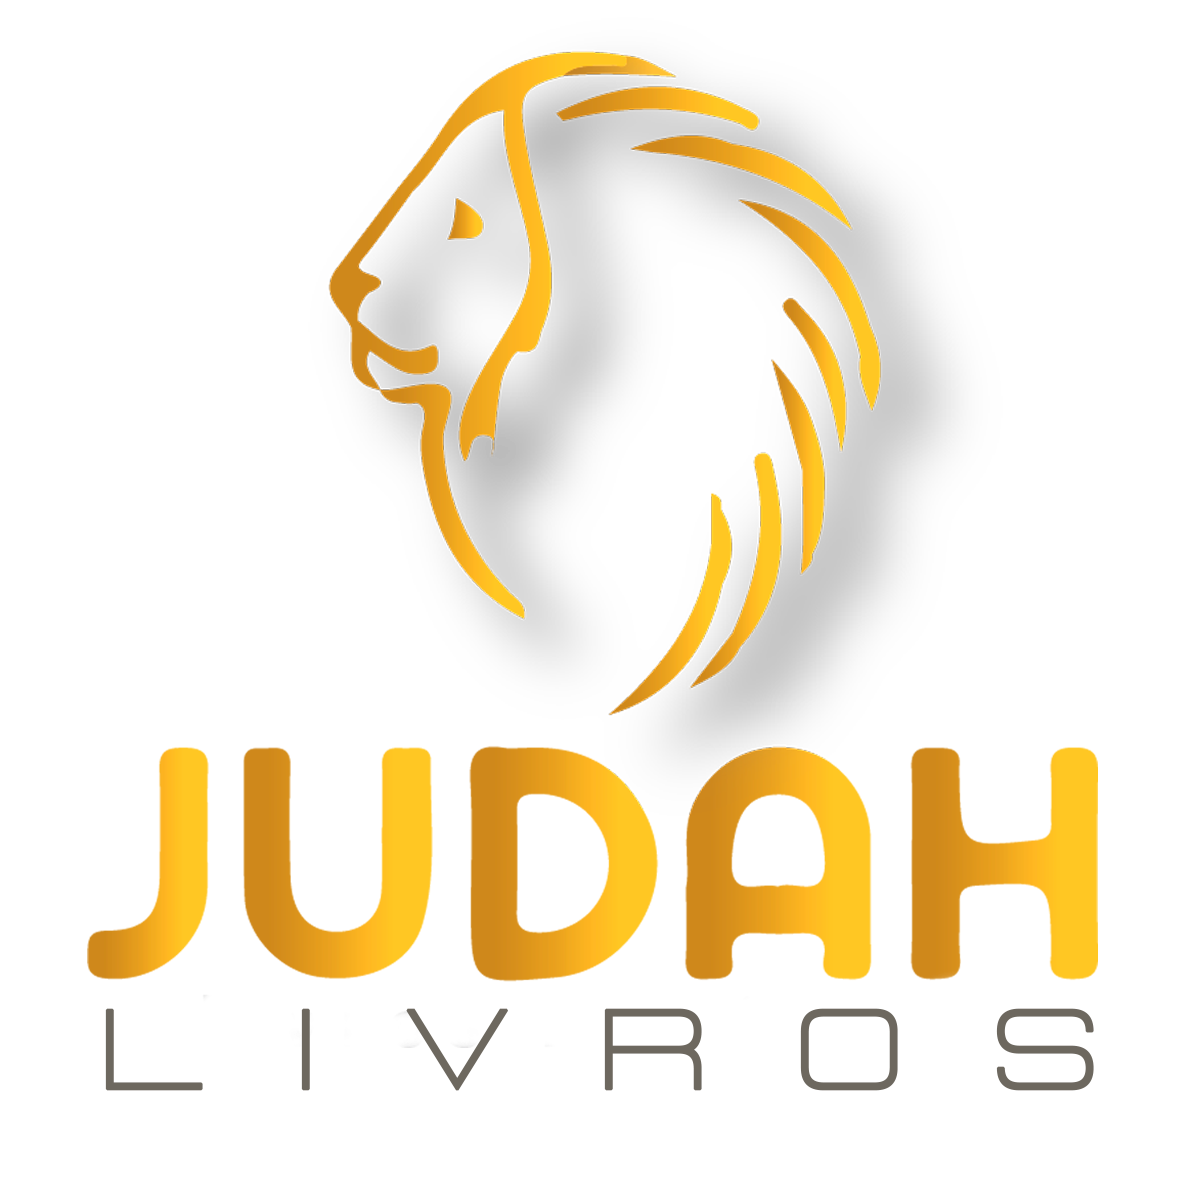 JUDAH LIVROS